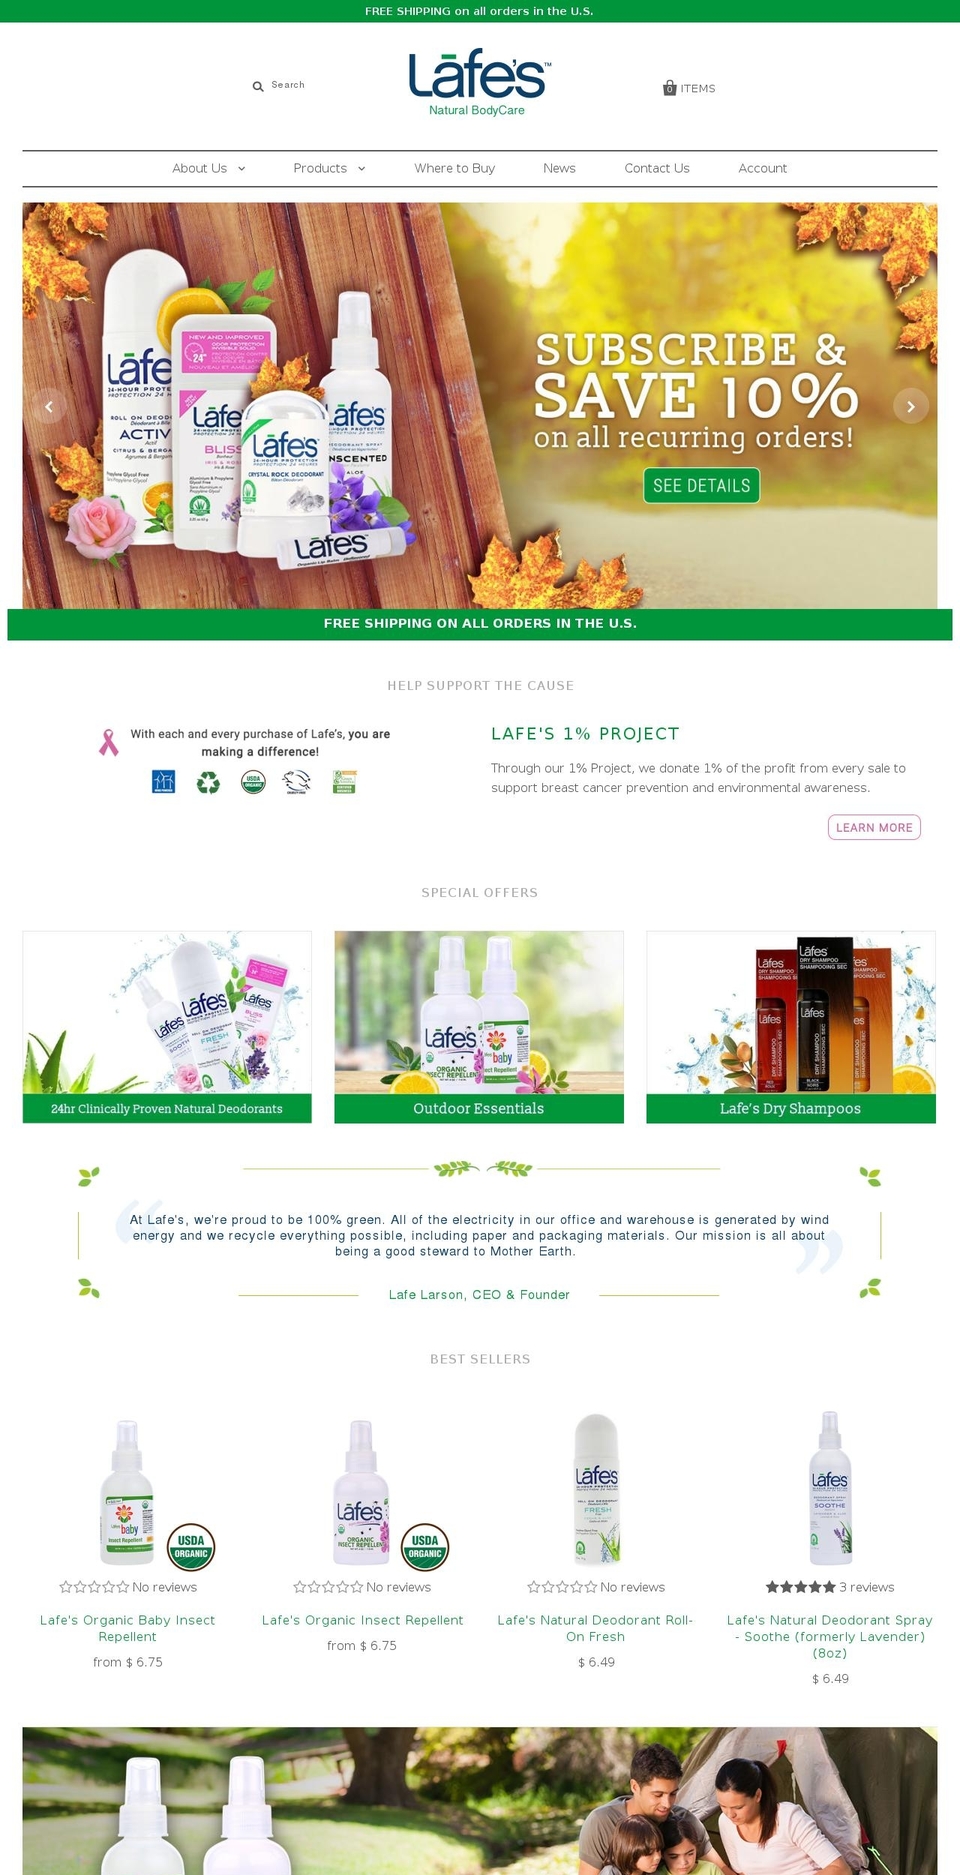 Flow Shopify theme site example lafes.com